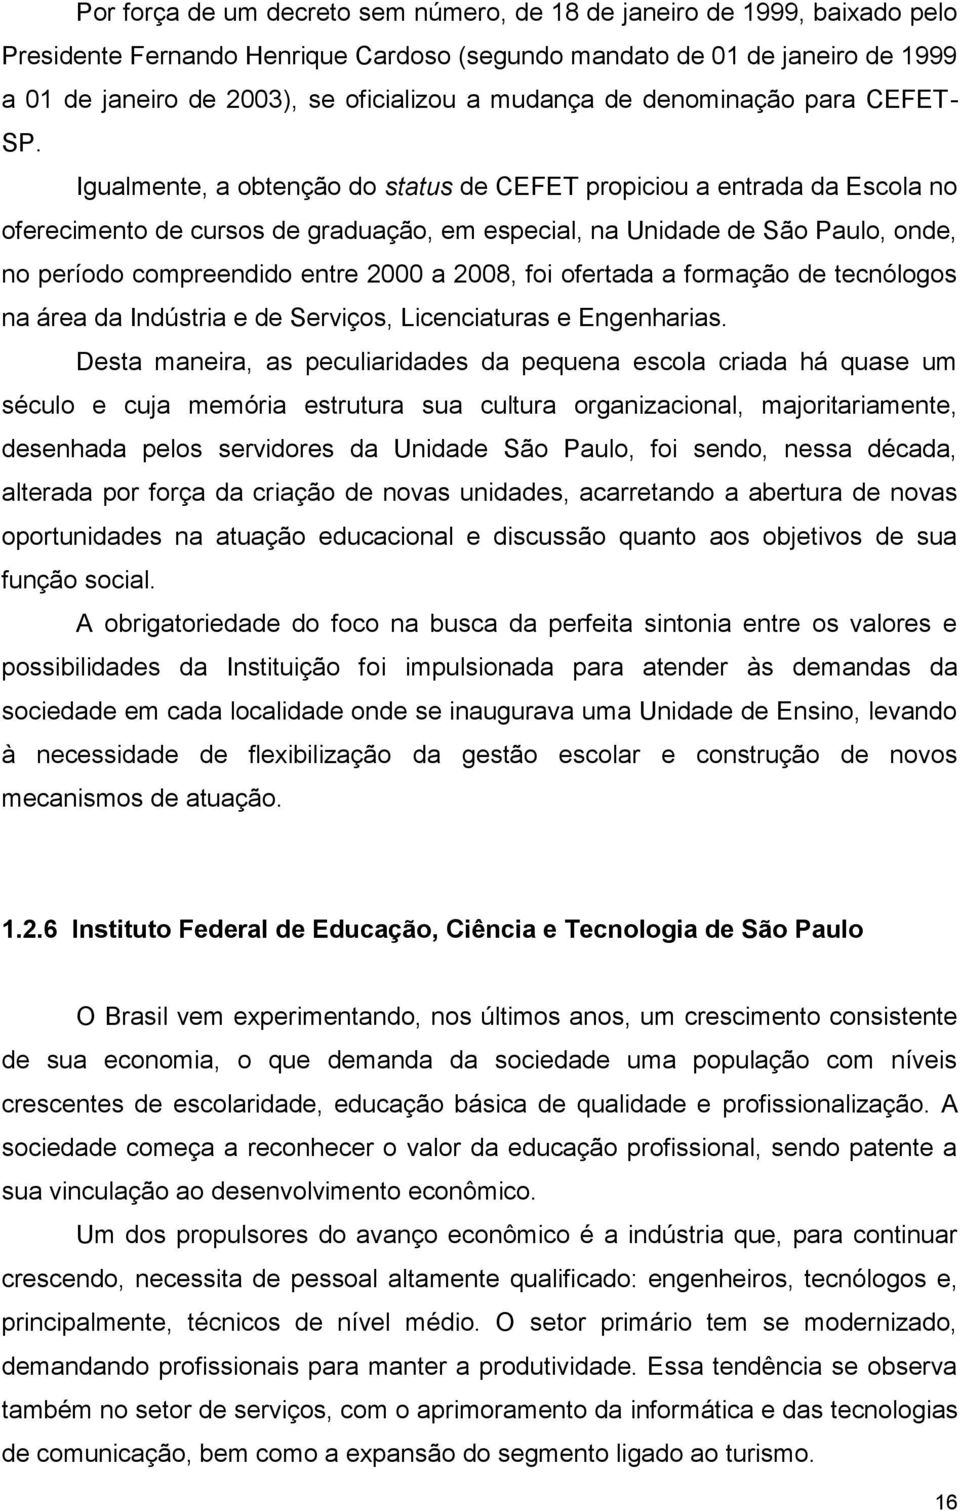 Igualmente, a obtenção do status de CEFET propiciou a entrada da Escola no oferecimento de cursos de graduação, em especial, na Unidade de São Paulo, onde, no período compreendido entre 2000 a 2008,